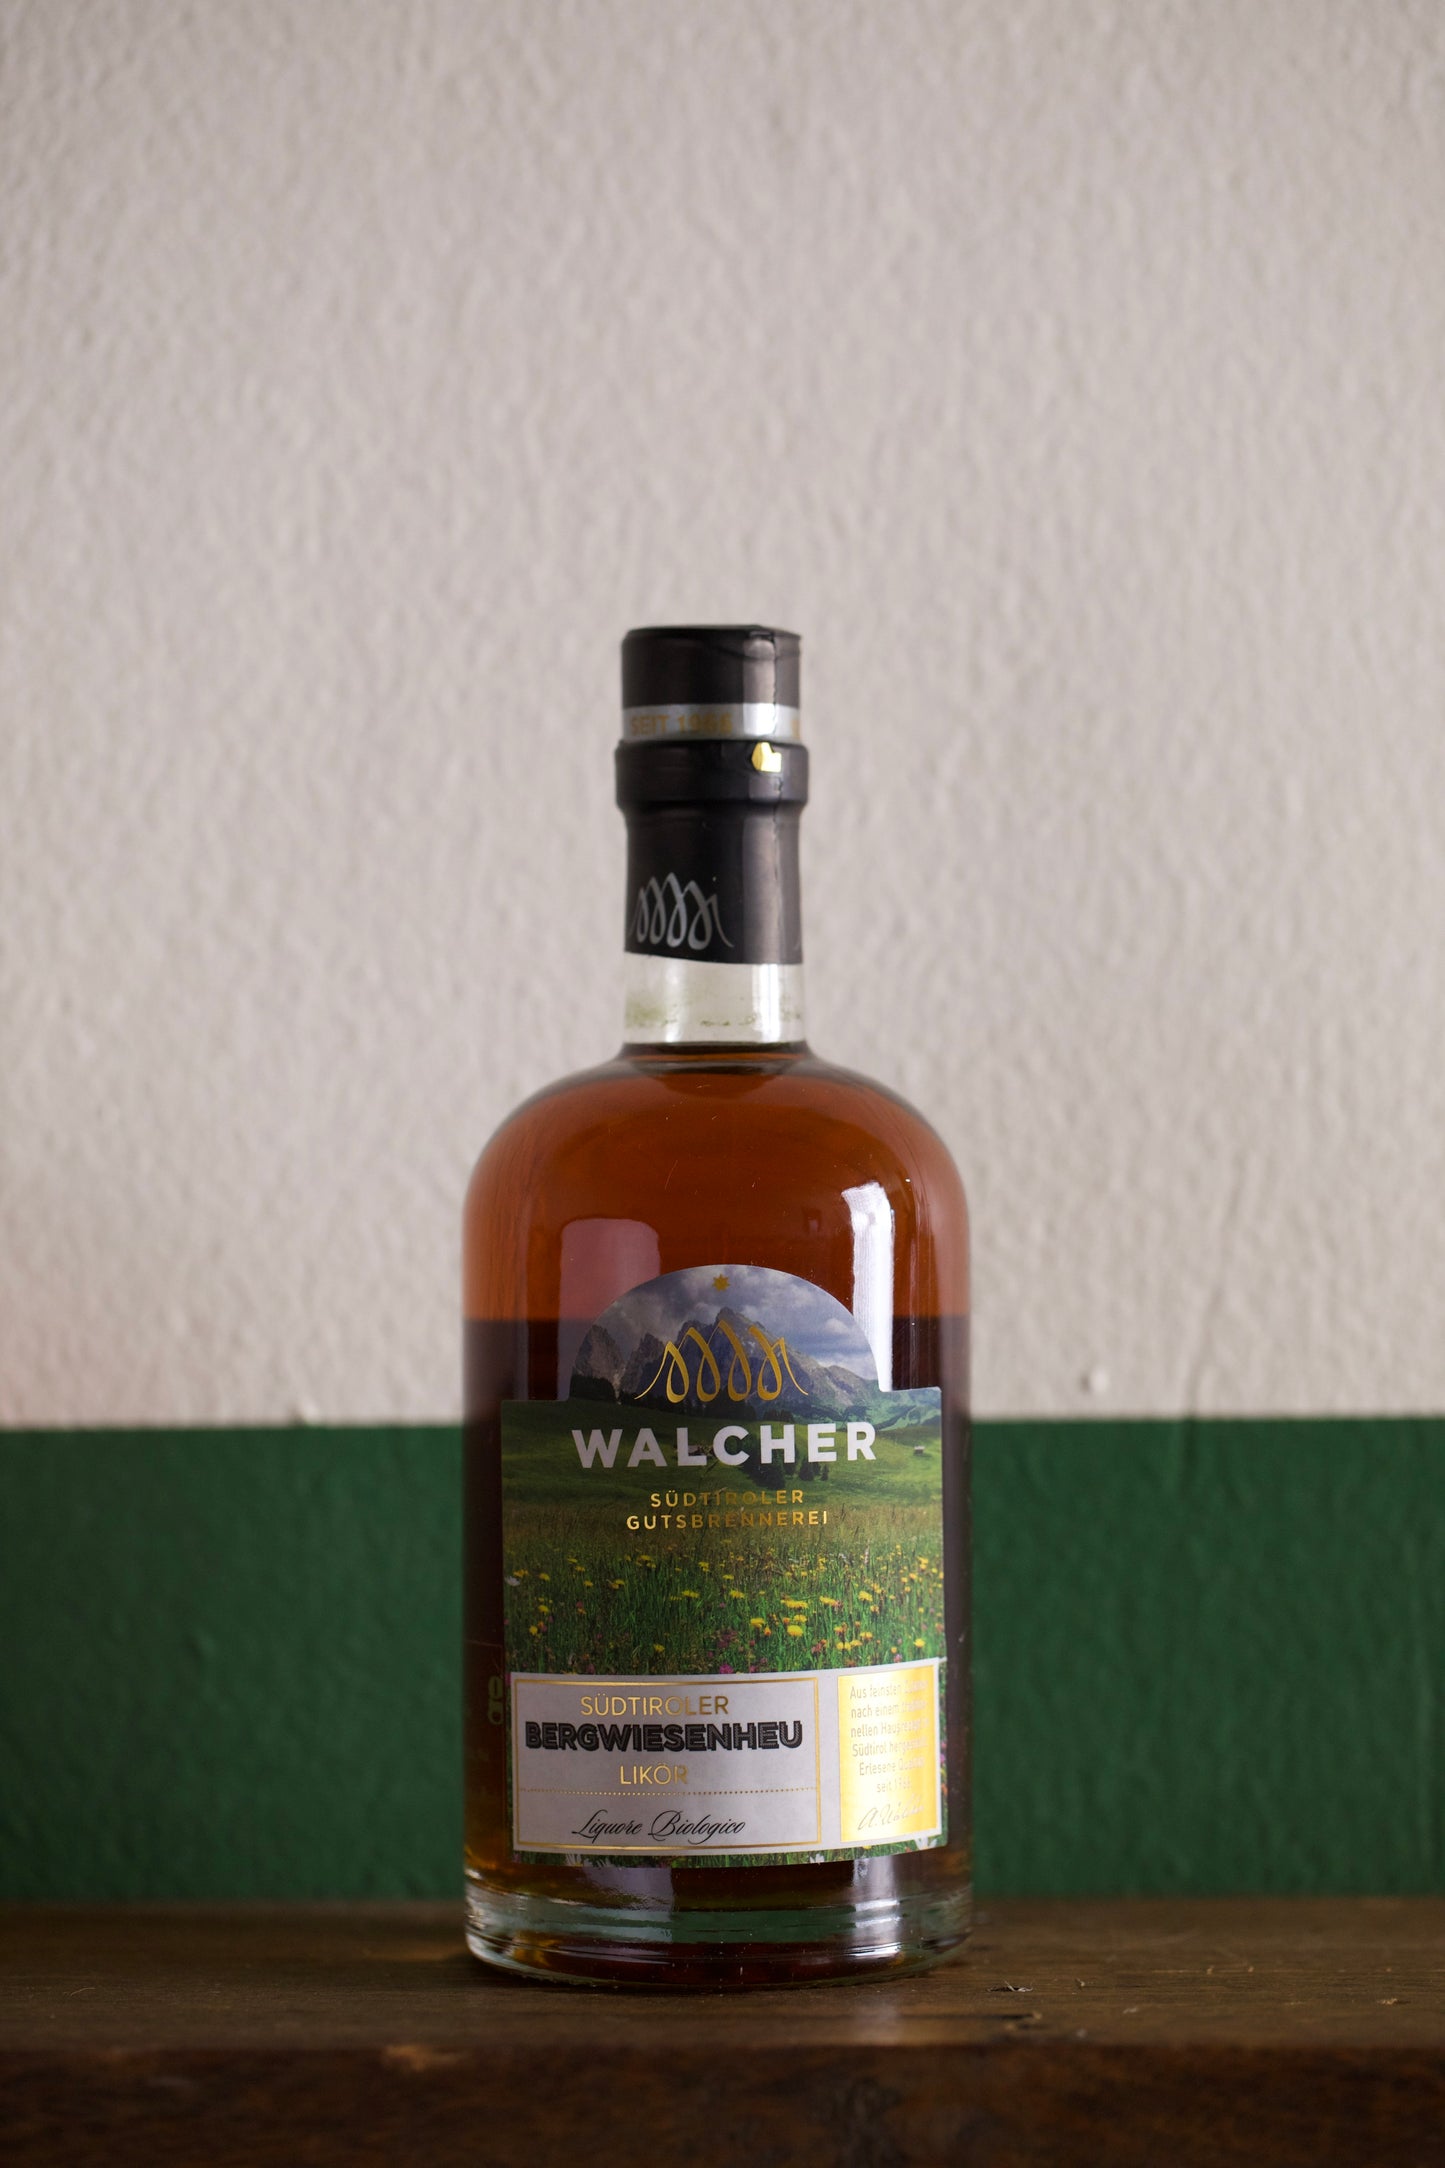 Bottle of Walcher 'Bergwiesenheu Likor' (Mountain Hay Liqeur) 500ml